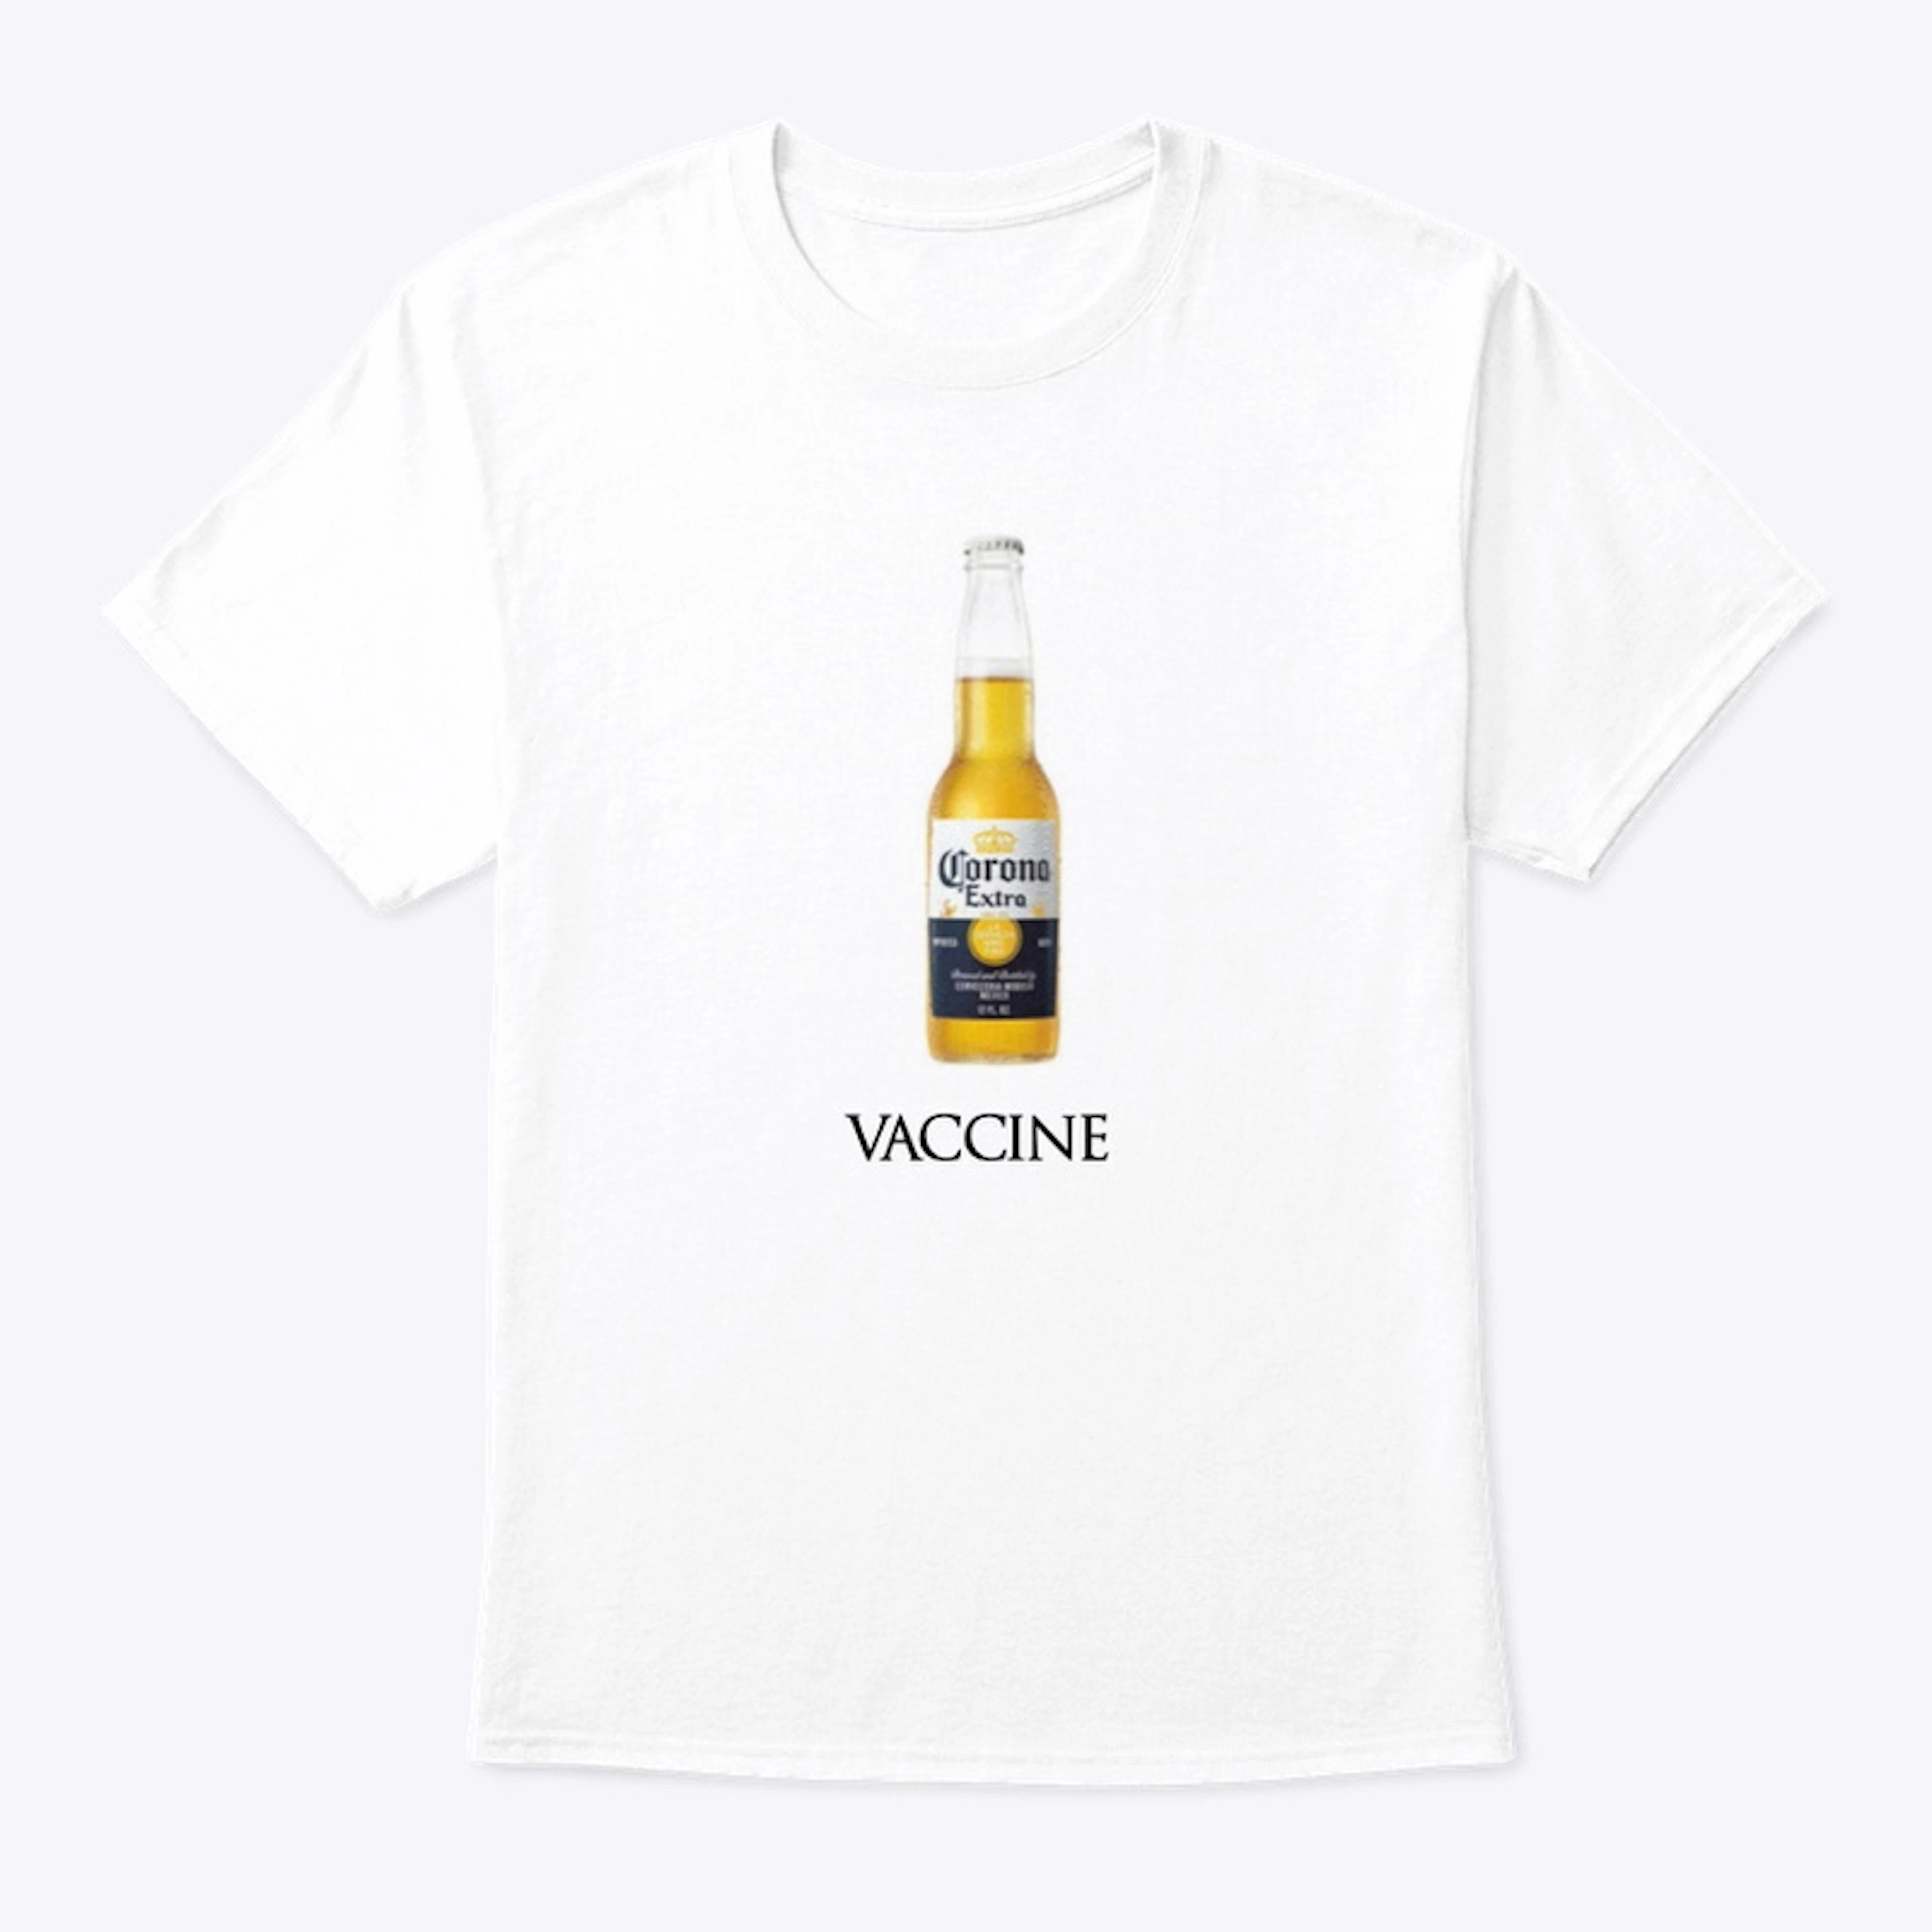 Vaccine shirt